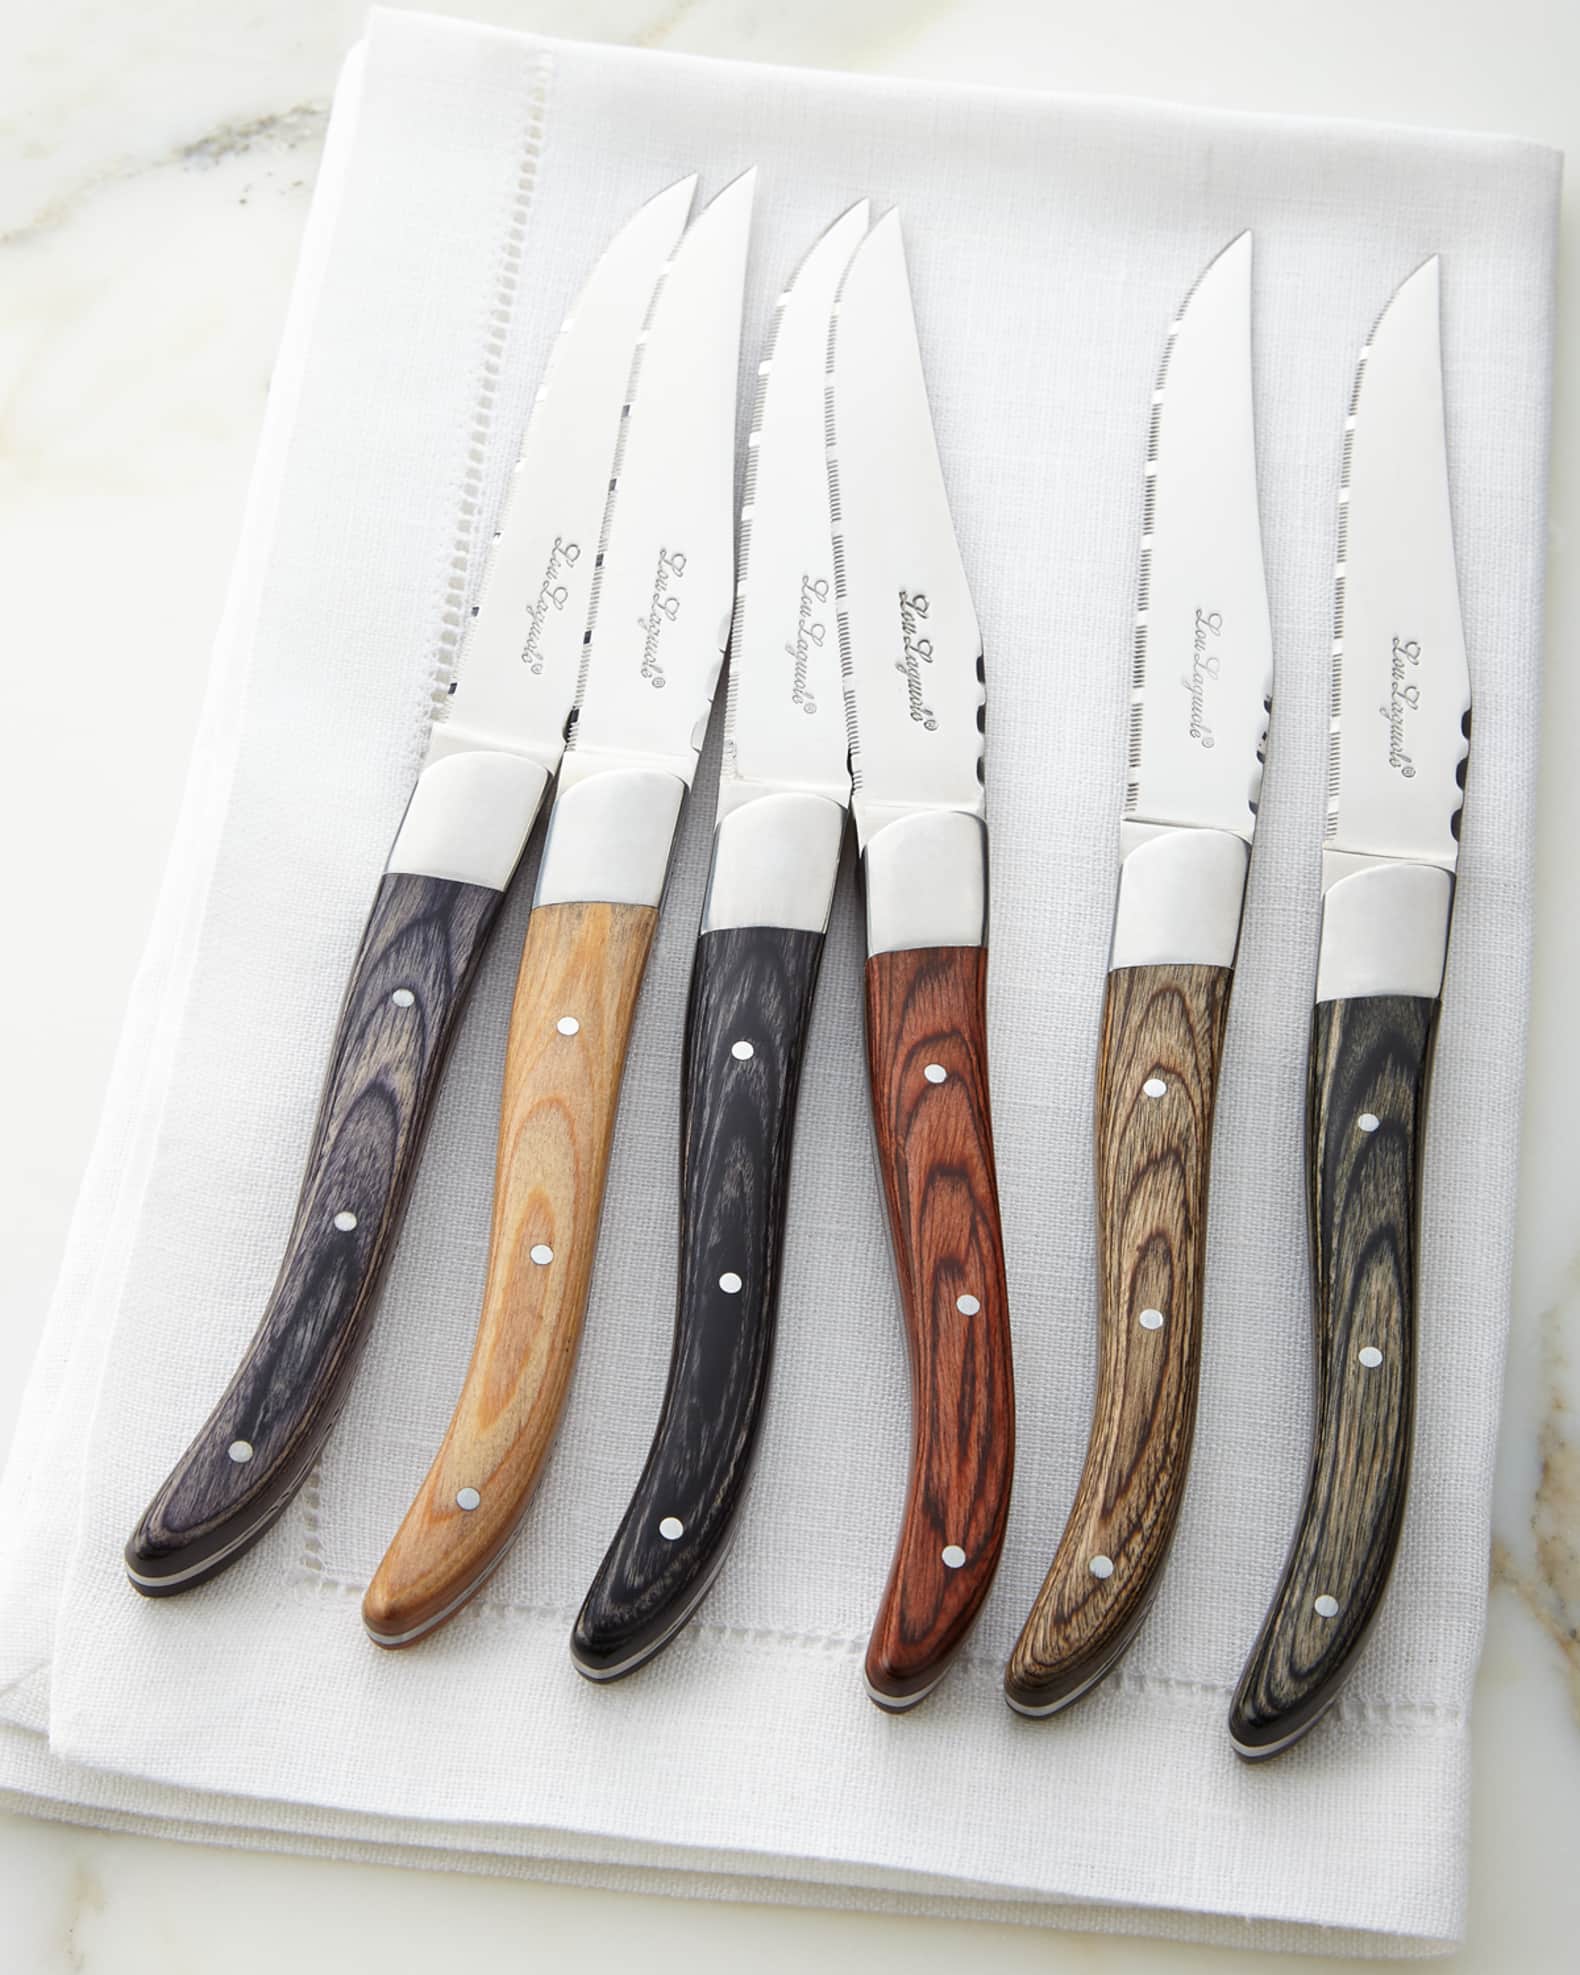 Laguiole Steak Knives